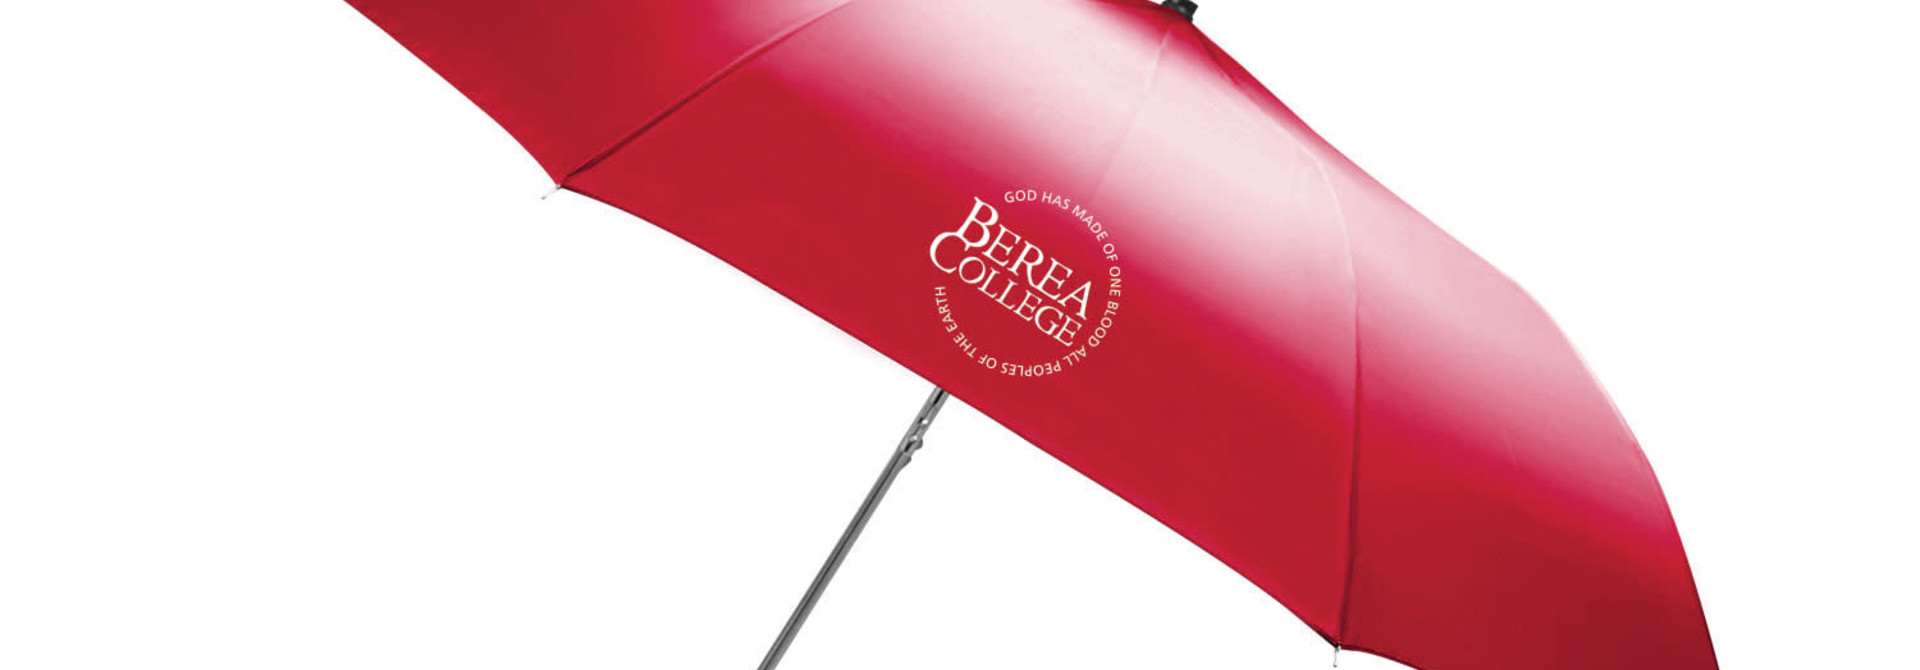 Berea College Umbrella